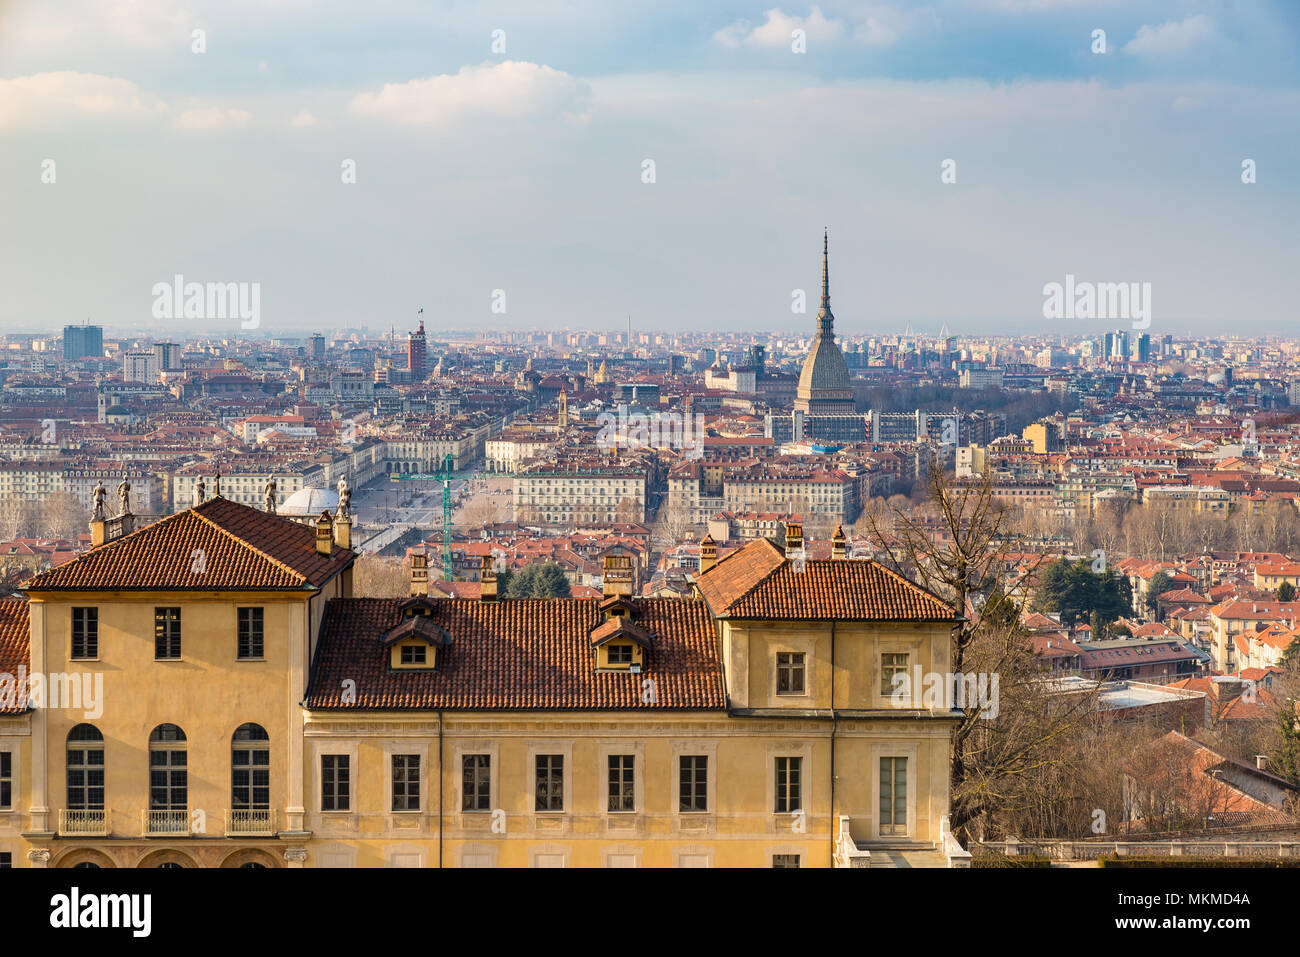 Skyline at Dusk de Turin, Torino, Italie, panorama Vue urbaine avec la Mole Antonelliana sur la ville. Lumière colorée pittoresque et ciel dramatique. Banque D'Images